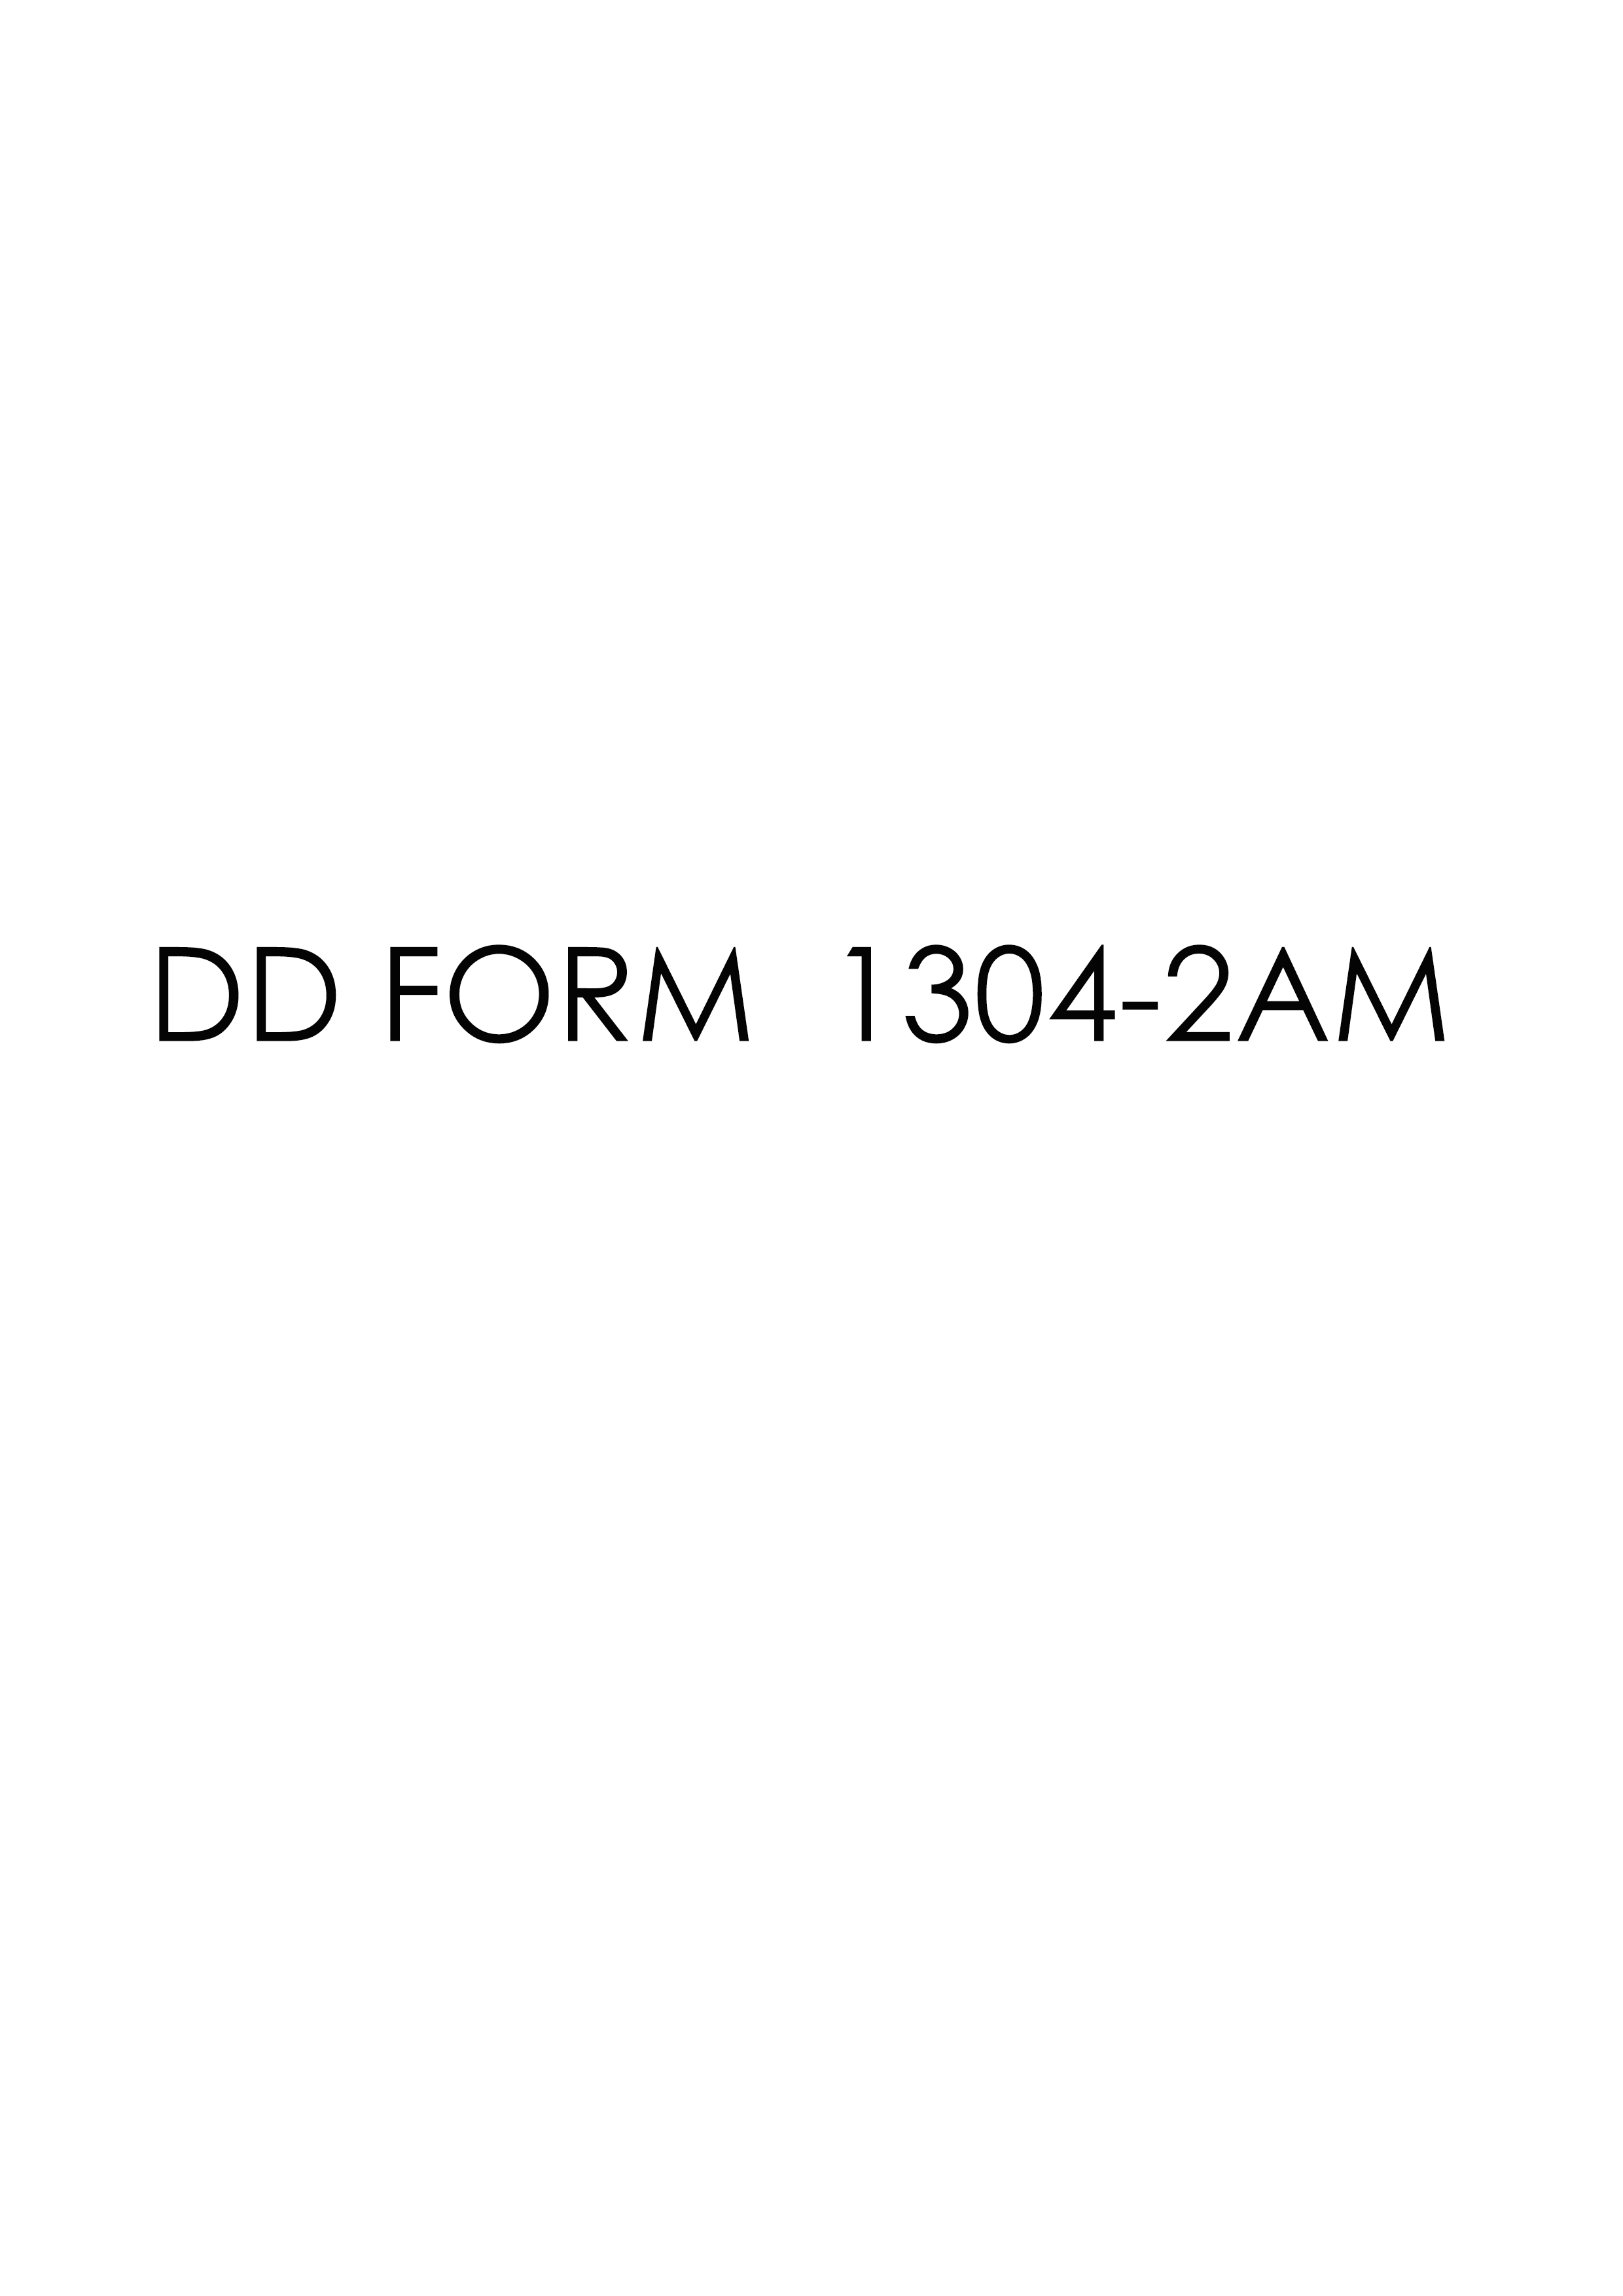 Download dd Form 1304-2AM